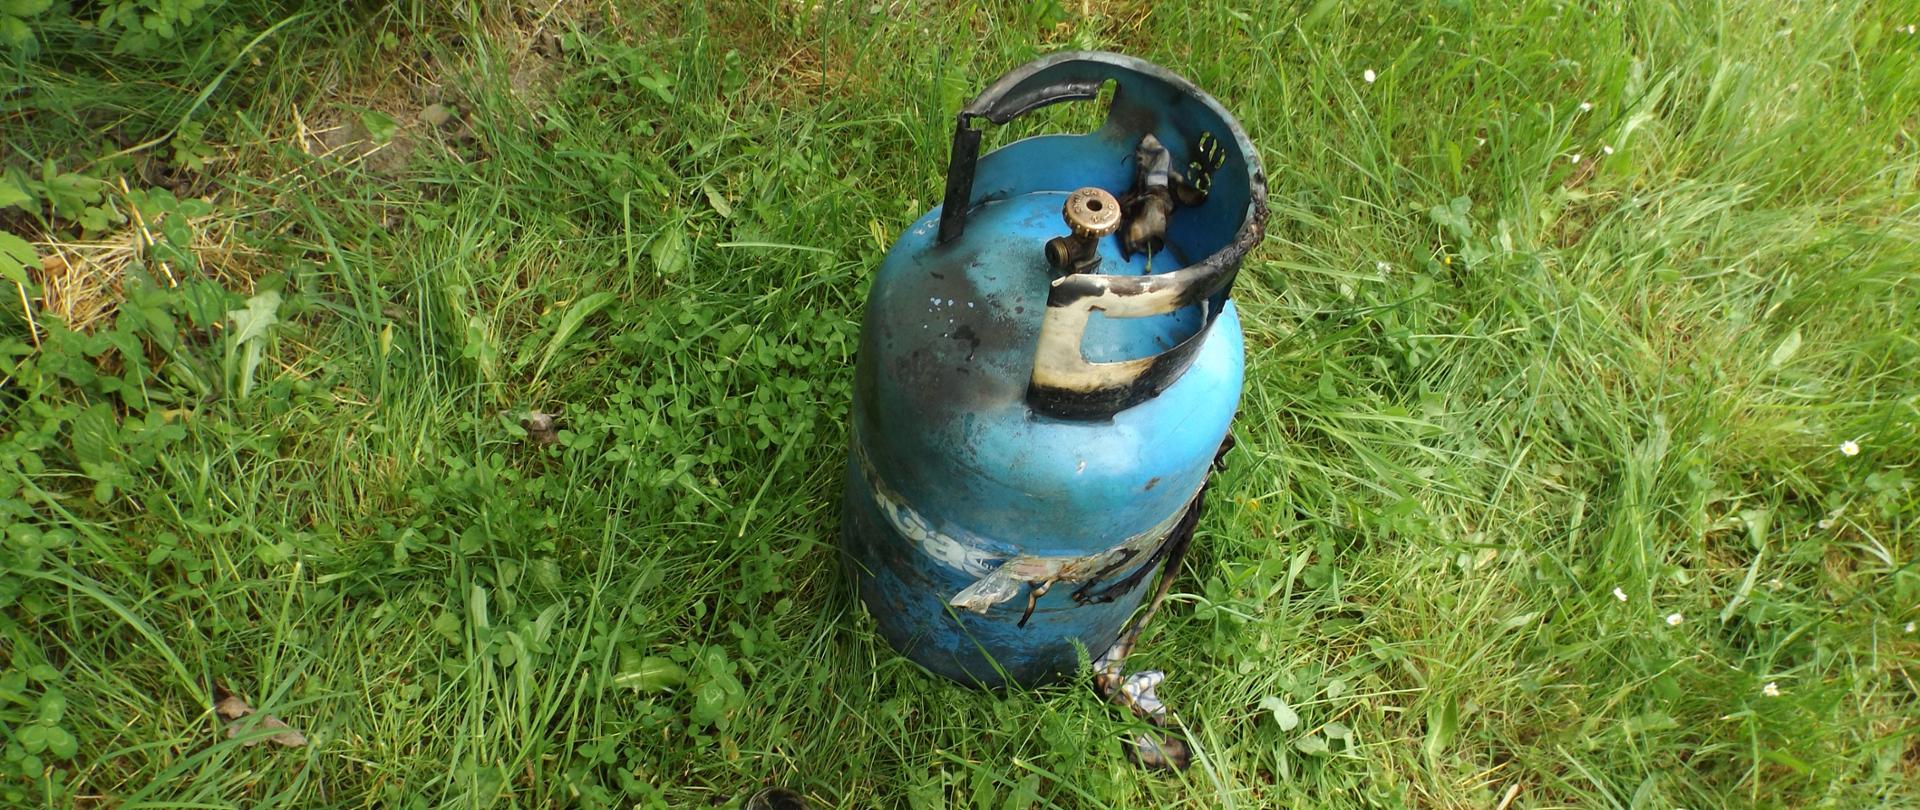 Zdjęcie przedstawia butlę 11kg stojącą na trawie. Widać ślady okopcenia świadczące o pożarze butli.